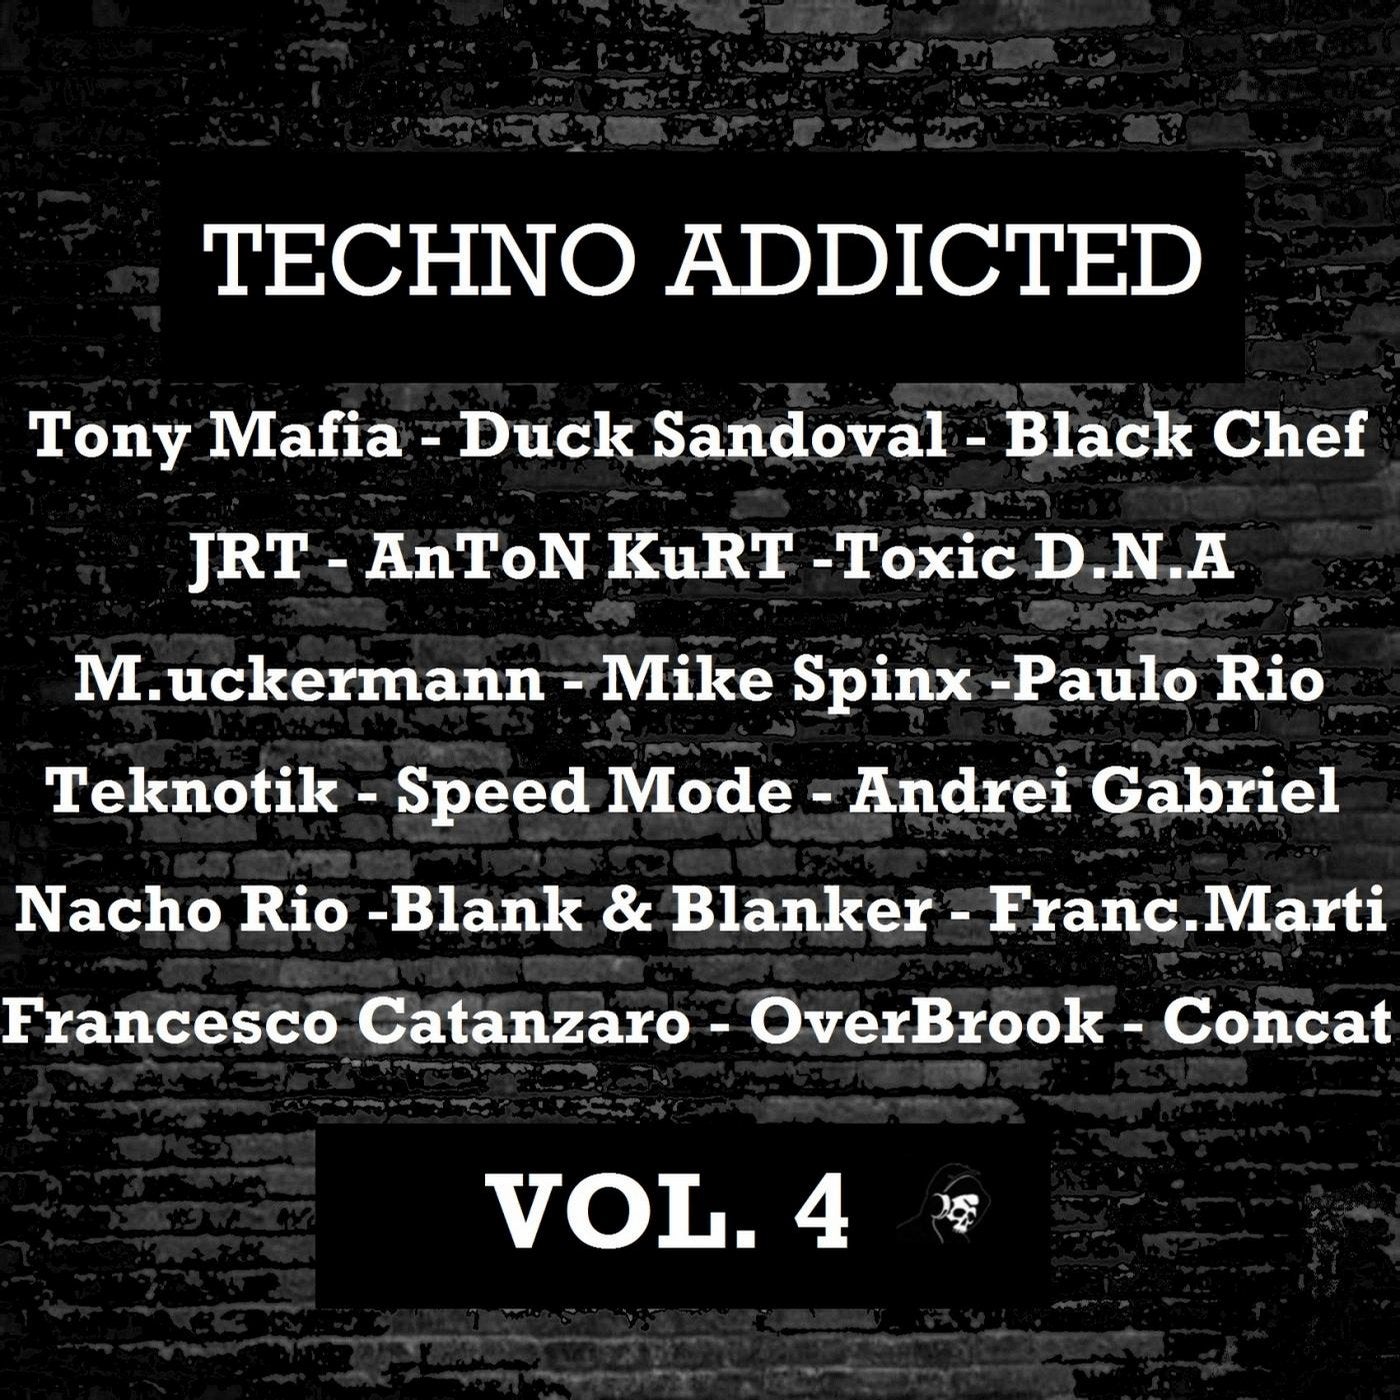 Techno Addicted Vol. 4